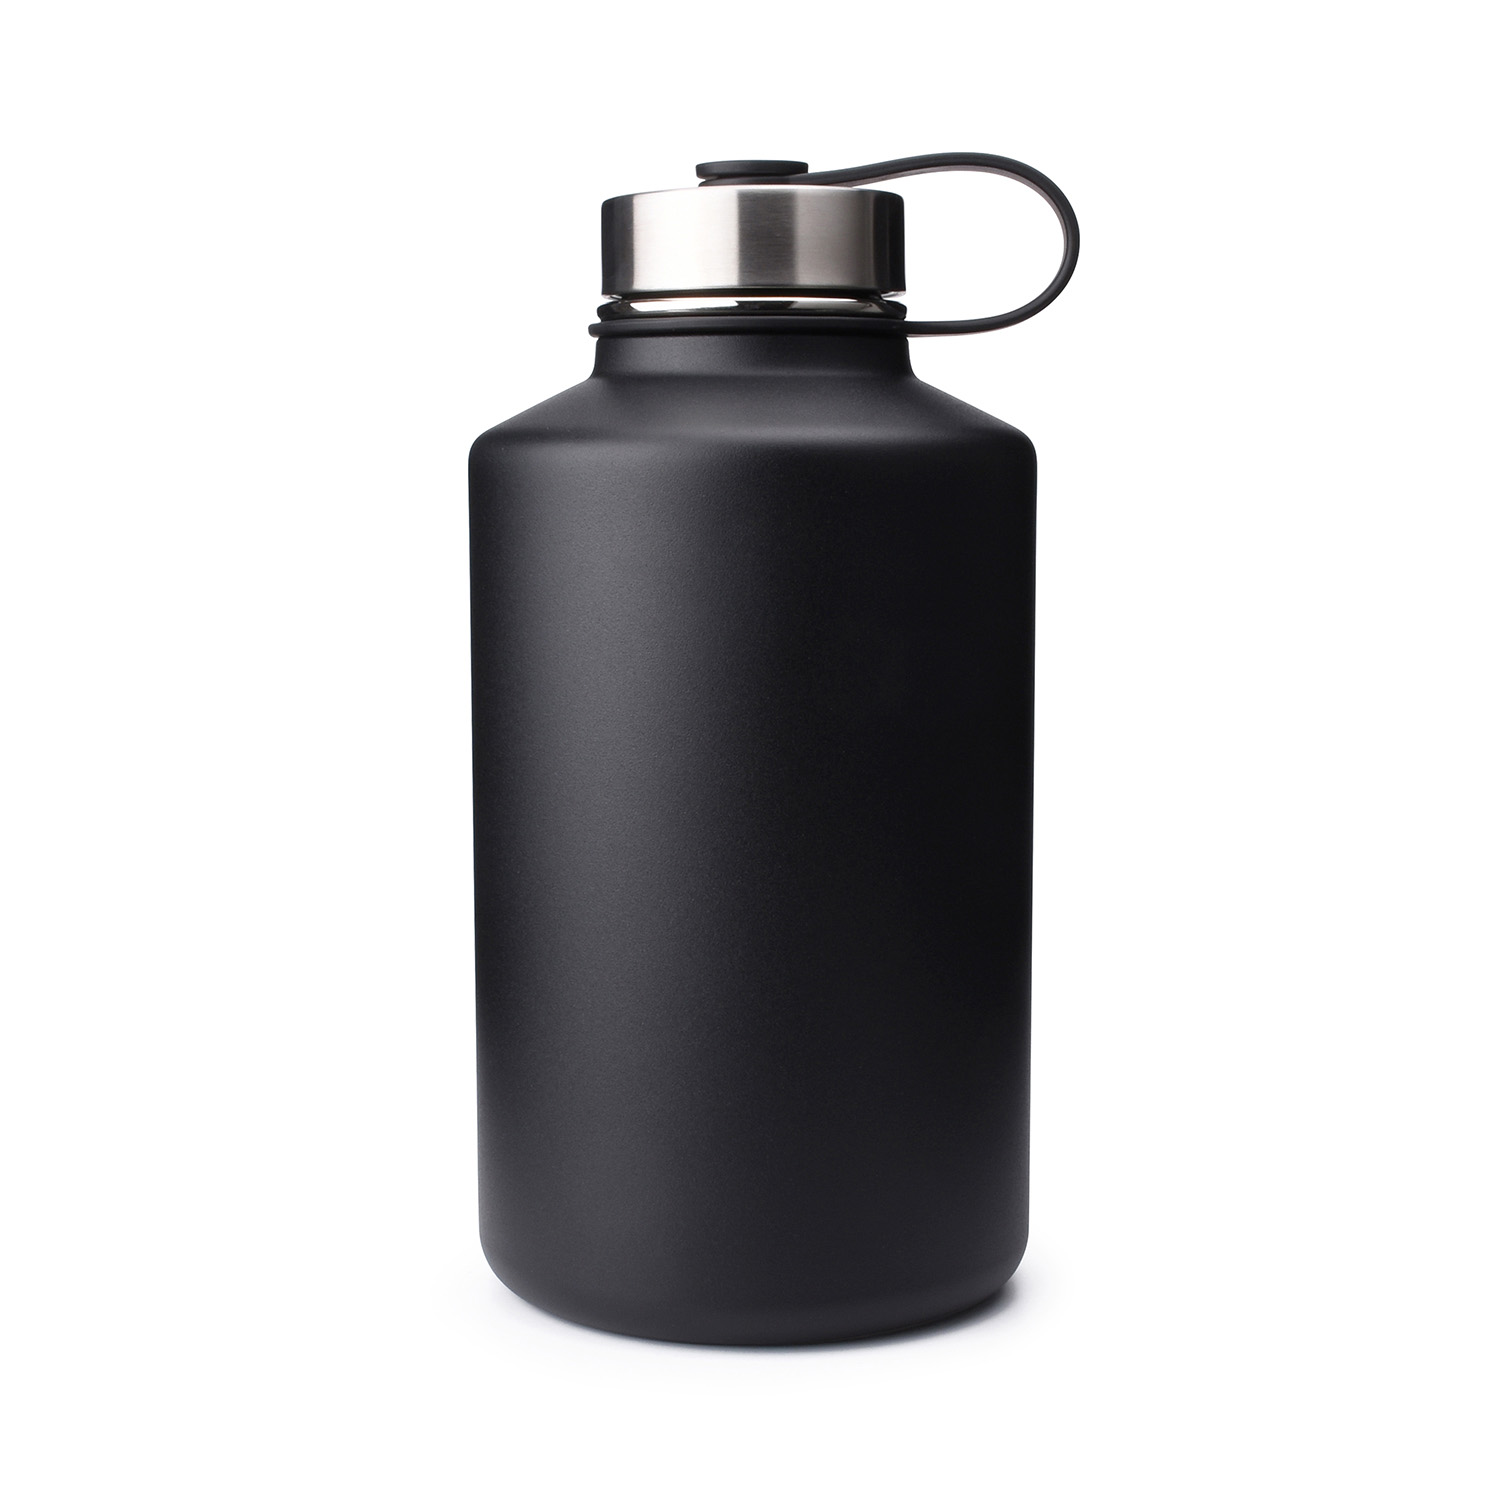 https://www.waterbottle.tech/wp-content/uploads/2021/04/64oz-water-bottle-with-stainless-steel-cap-s1164f1-1.jpg